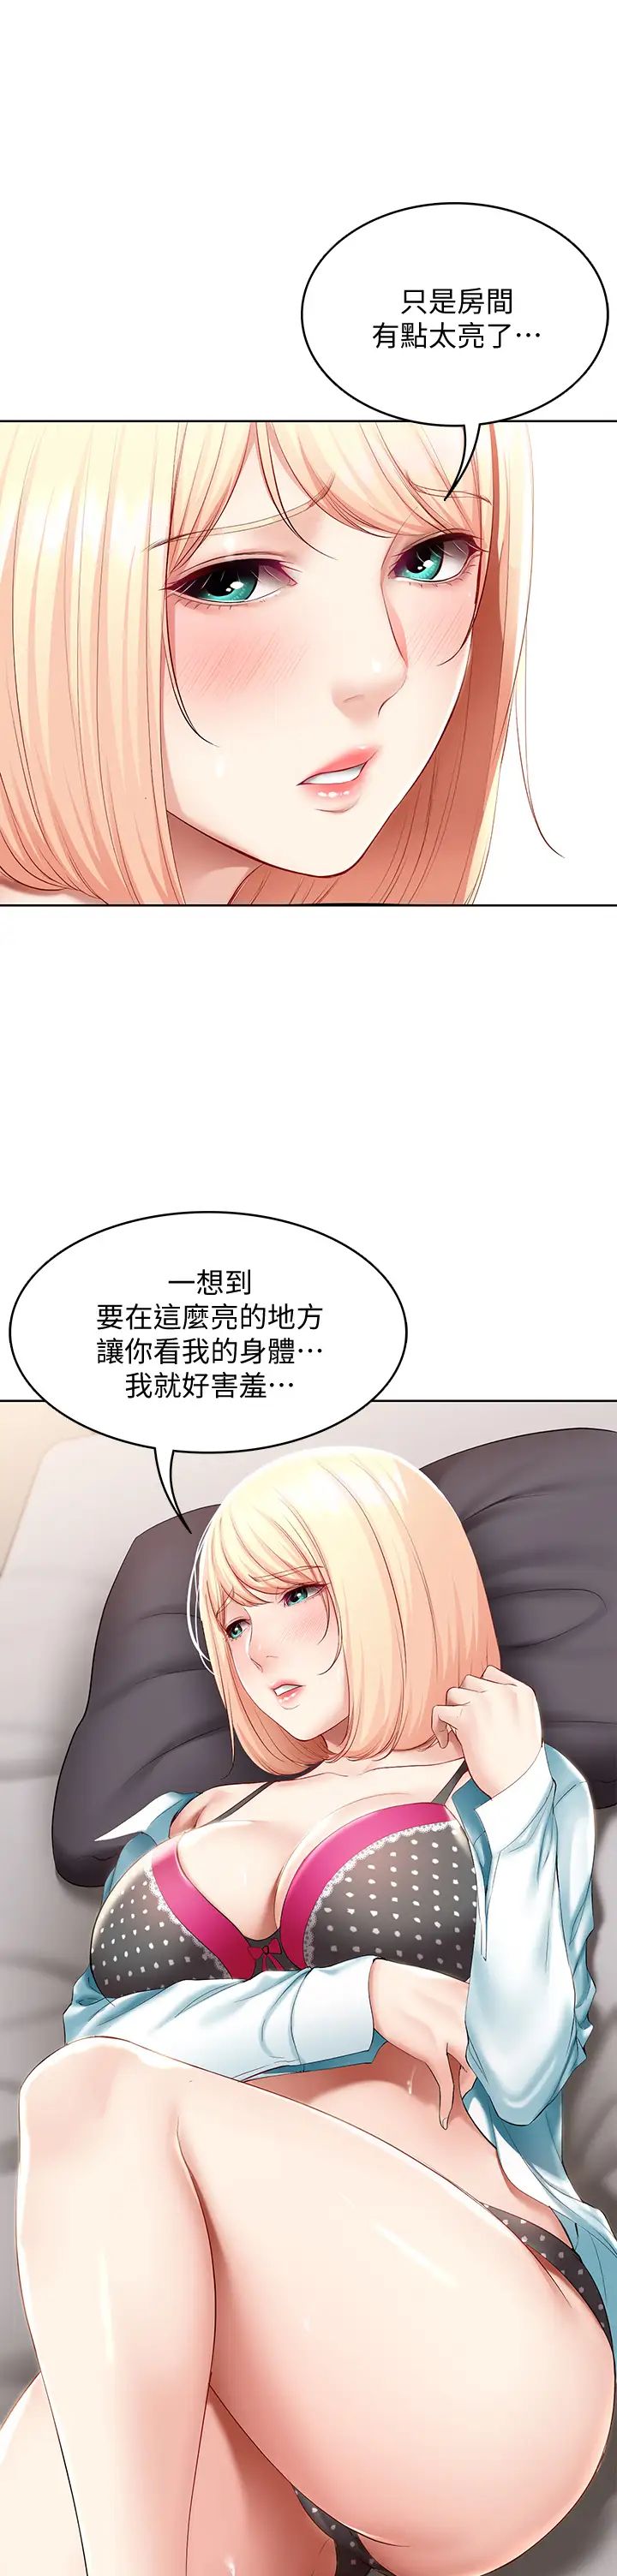 韩国污漫画 寄宿日記 第62话培琳可口的酥胸 13